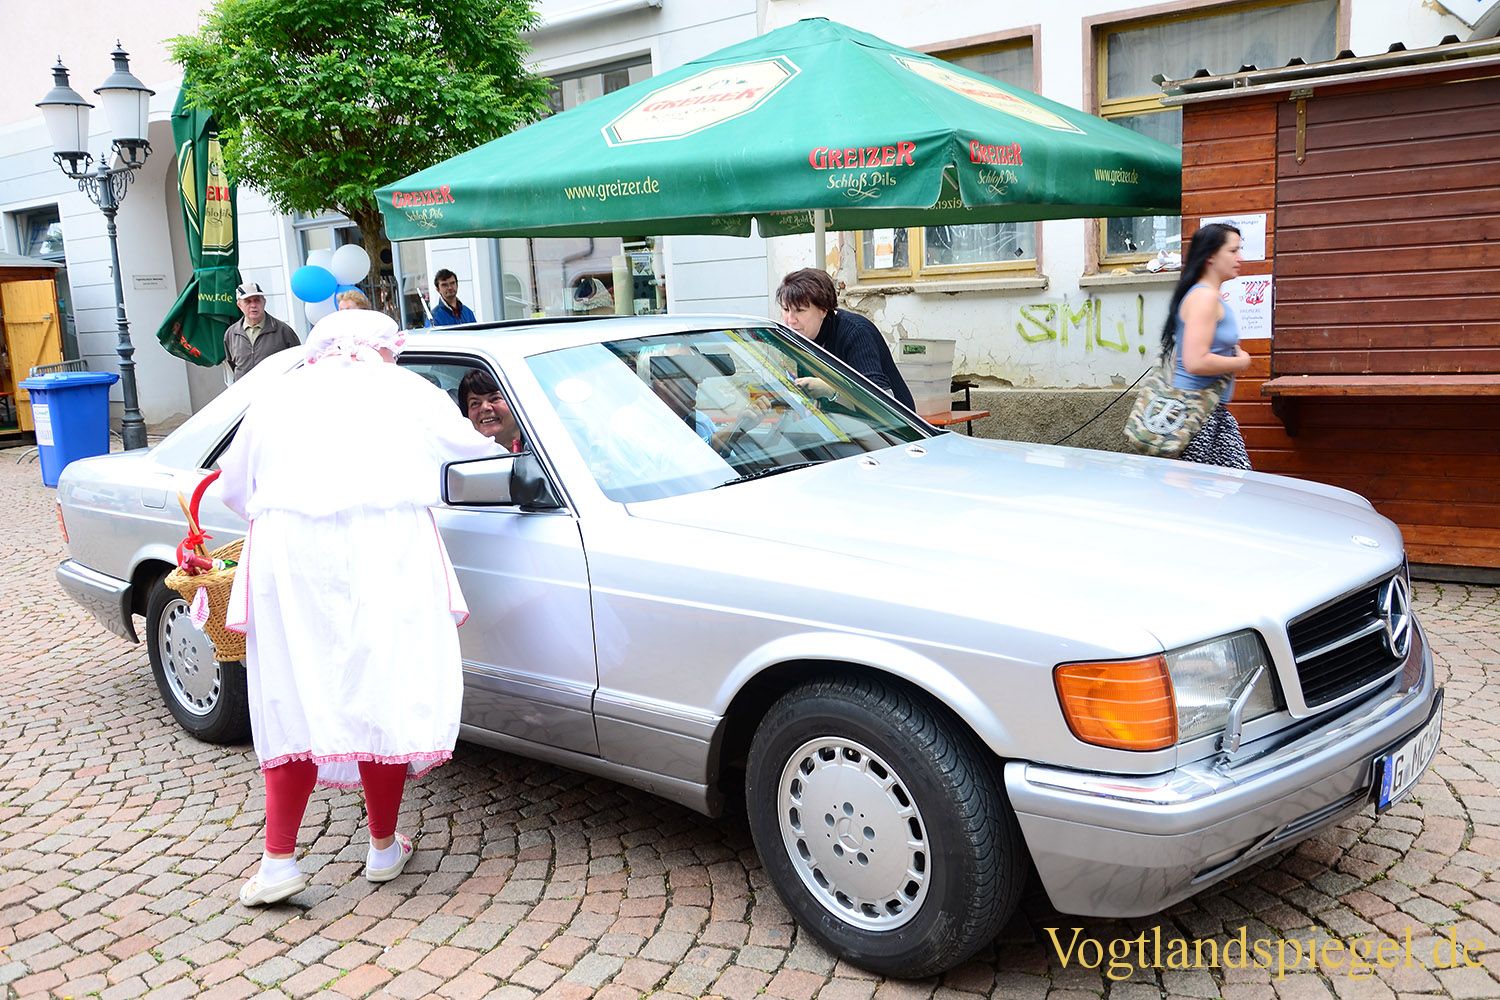 Historische Fahrzeuge live und in Farbe auf dem Greizer Markt